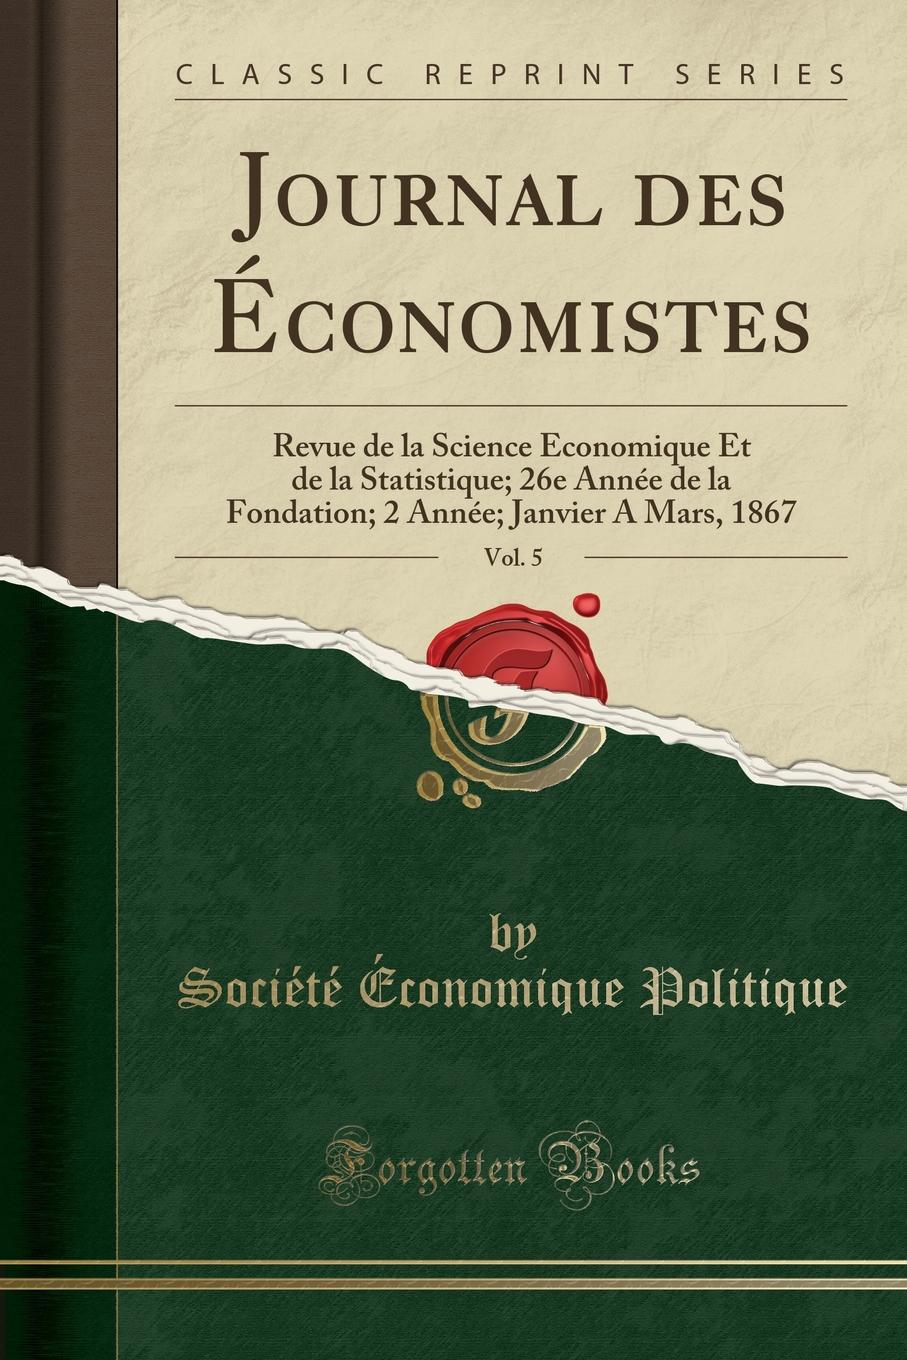 Société Économique Politique Journal des Economistes, Vol. 5. Revue de la Science Economique Et de la Statistique; 26e Annee de la Fondation; 2 Annee; Janvier A Mars, 1867 (Classic Reprint)